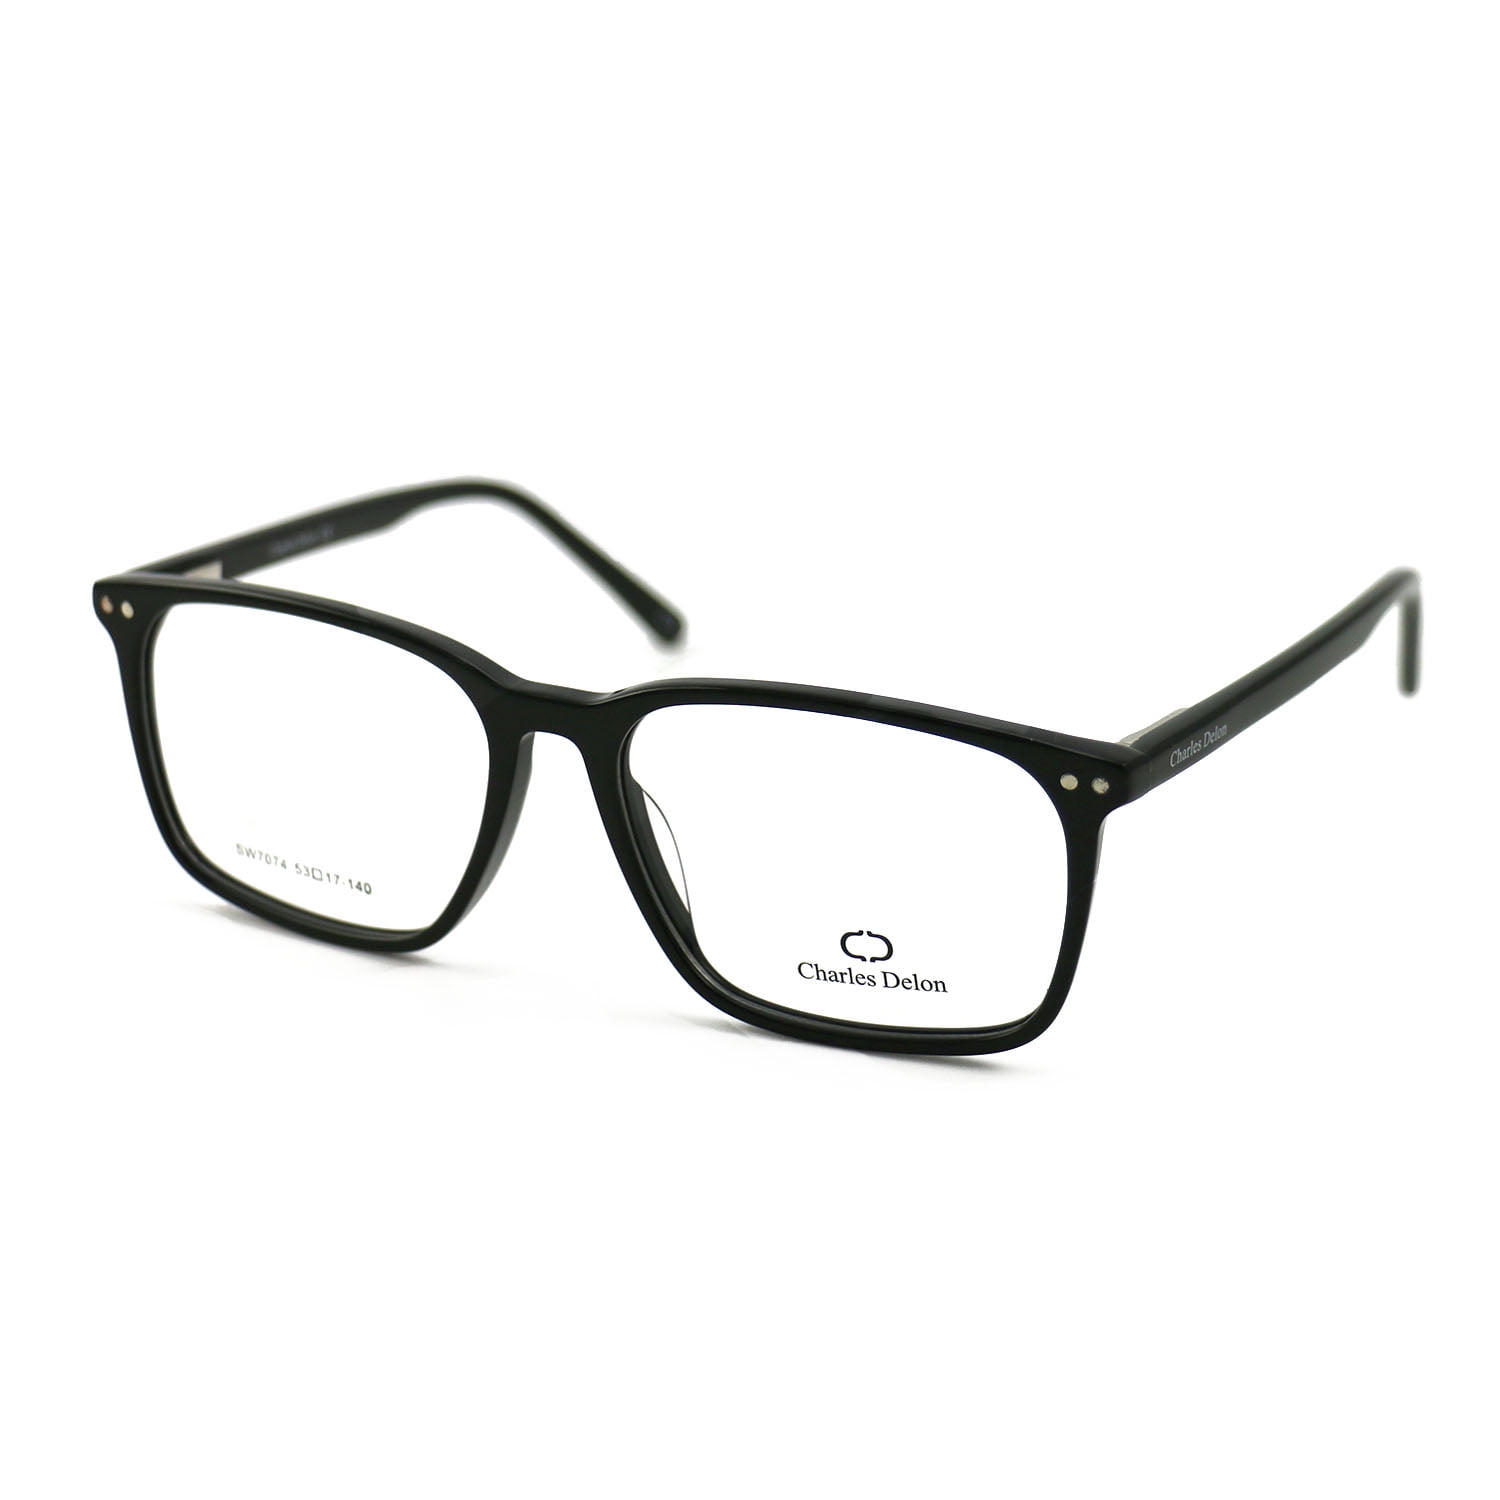 Eyeglasses Frames for Men Black Frames Square 53 17 140 by Charles Delon